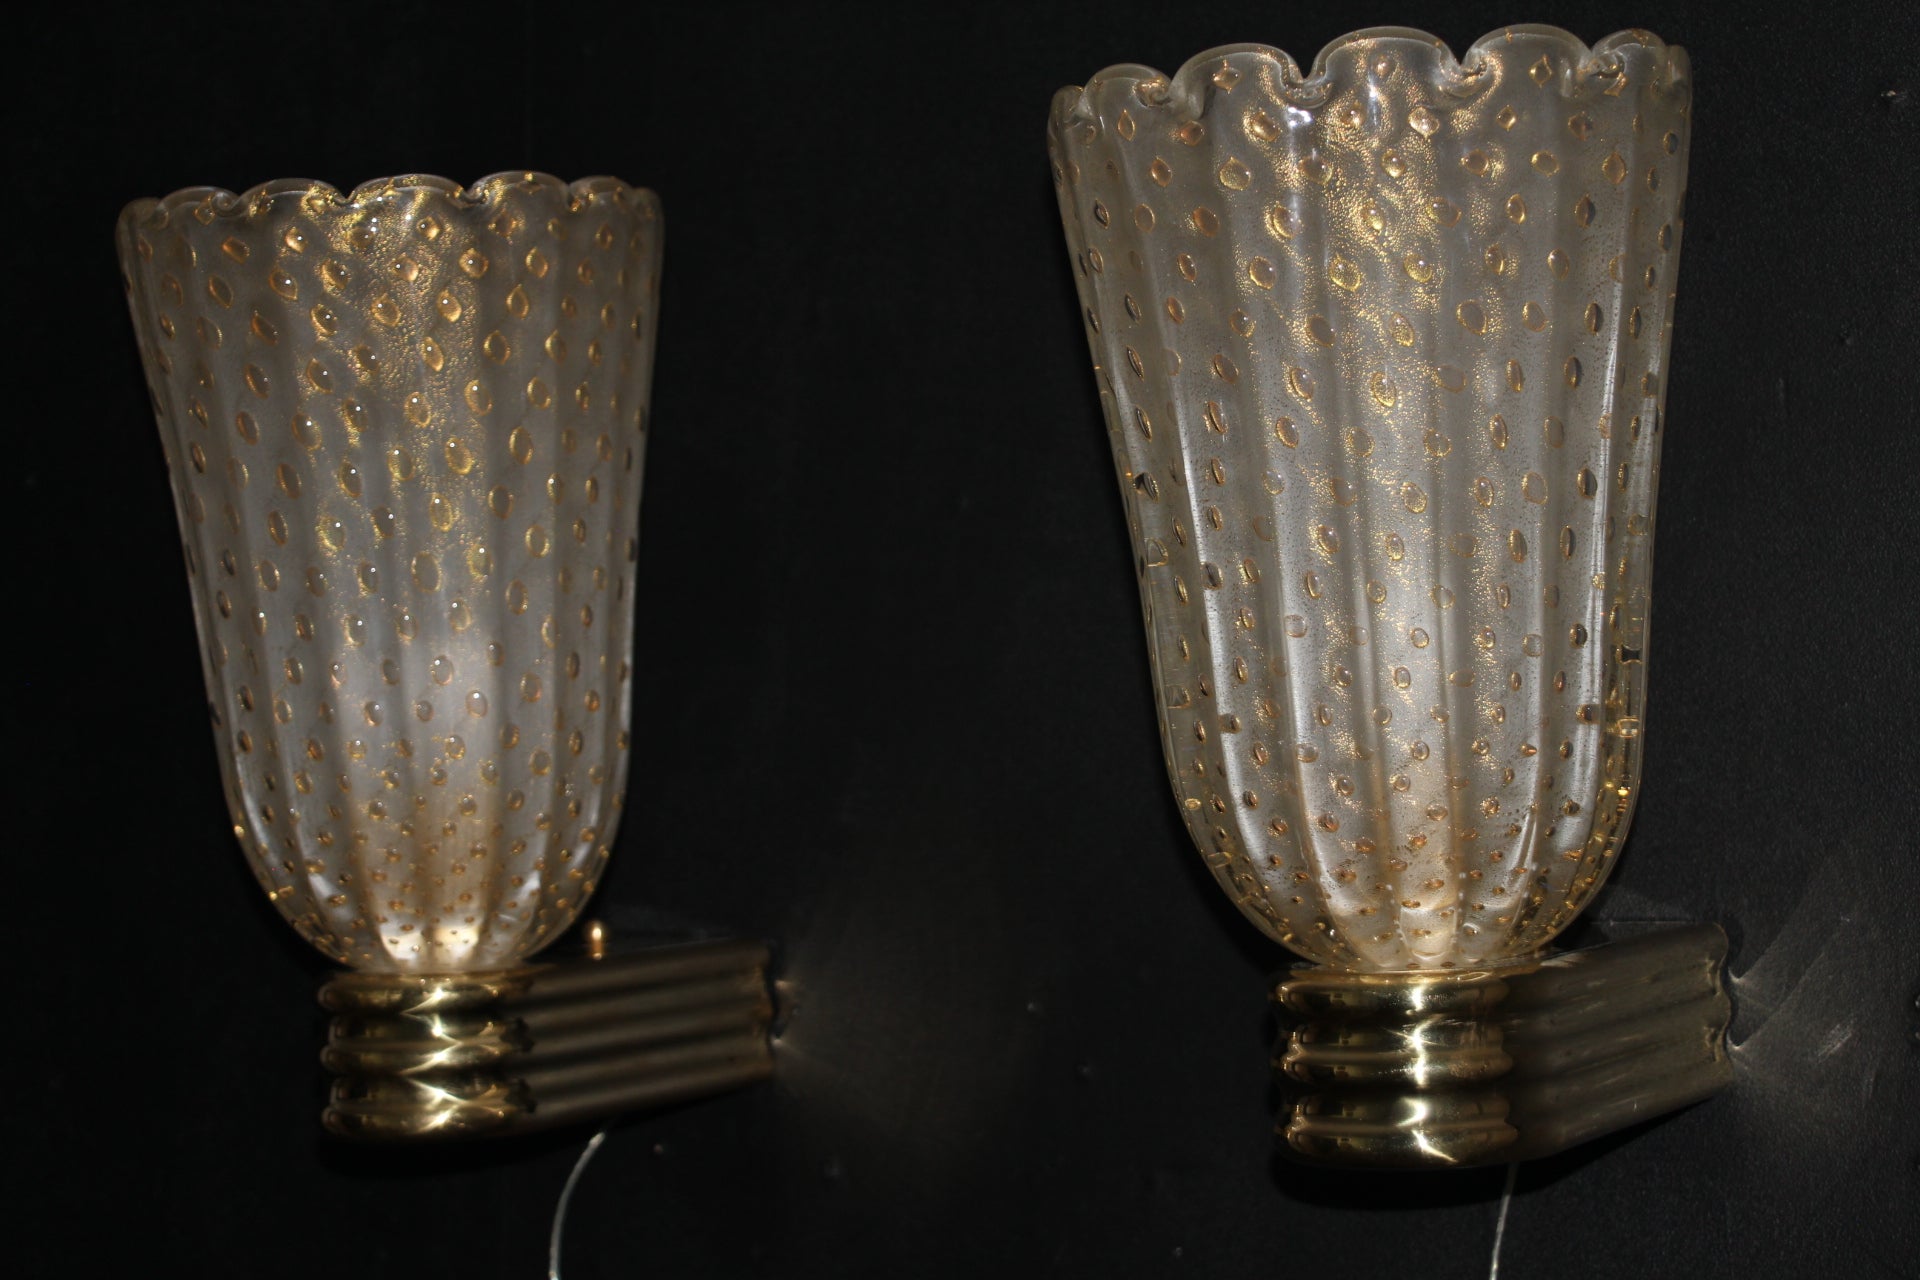 Cette fabuleuse paire d'appliques vénitiennes de style moderne ou Art Déco, a été entièrement réalisée à la main. Le tout est décoré avec la technique du Pulegoso. Cela signifie qu'il présente de grosses bulles d'air à l'intérieur de son verre